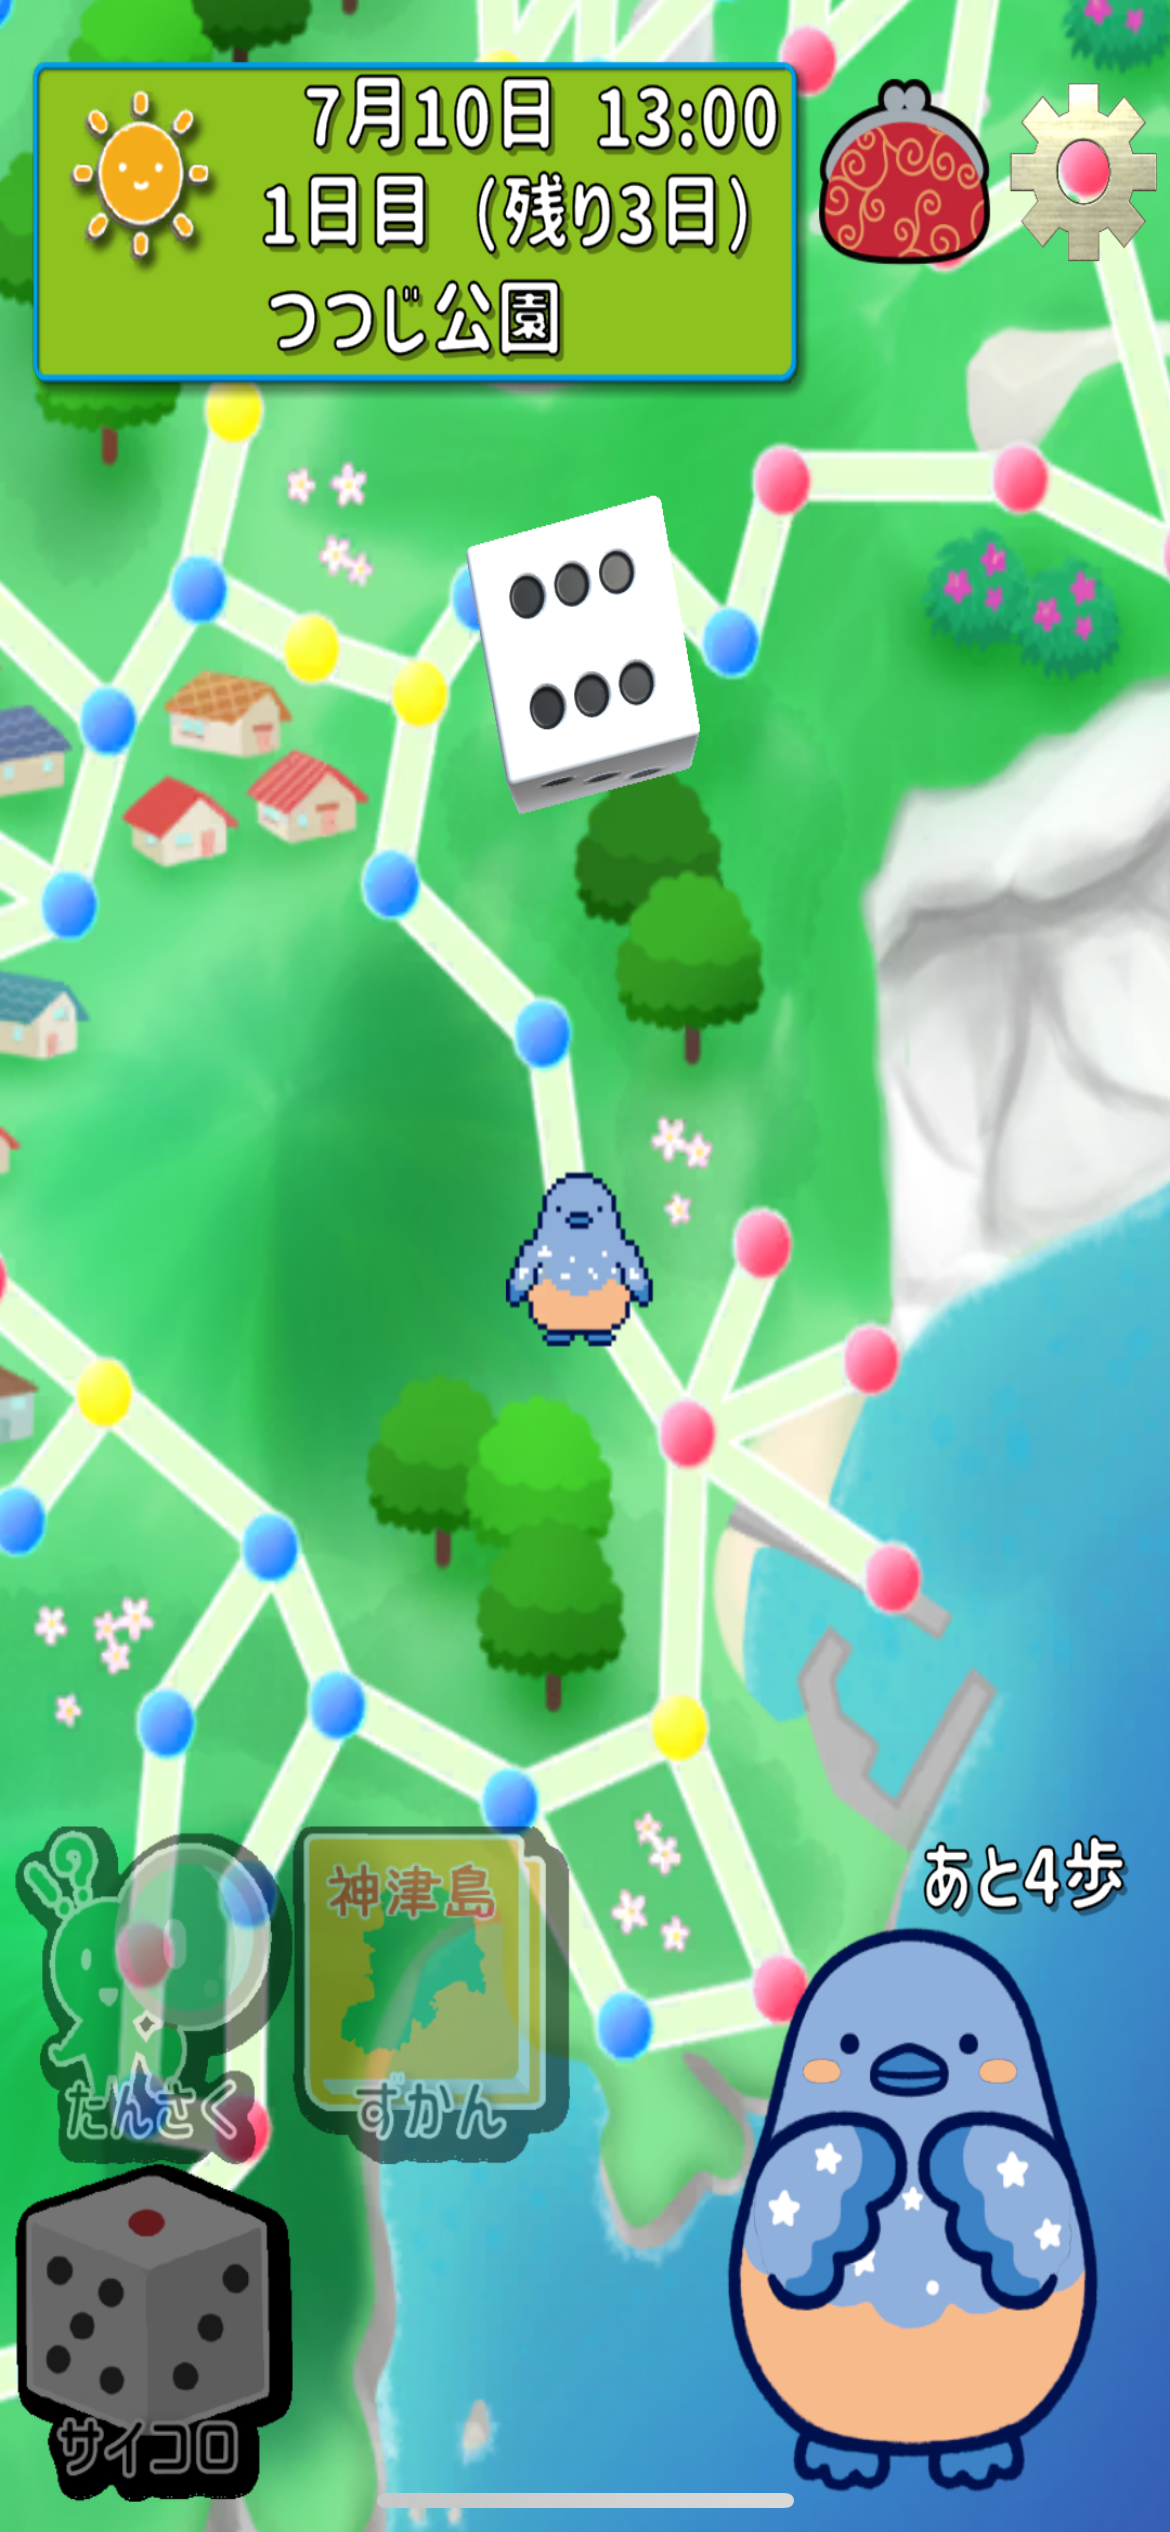 神津島観光アプリ「まるっと! 神津島」iOS 版登場！強化した音声ガイドとすごろく機能で創るサステナブル島旅...